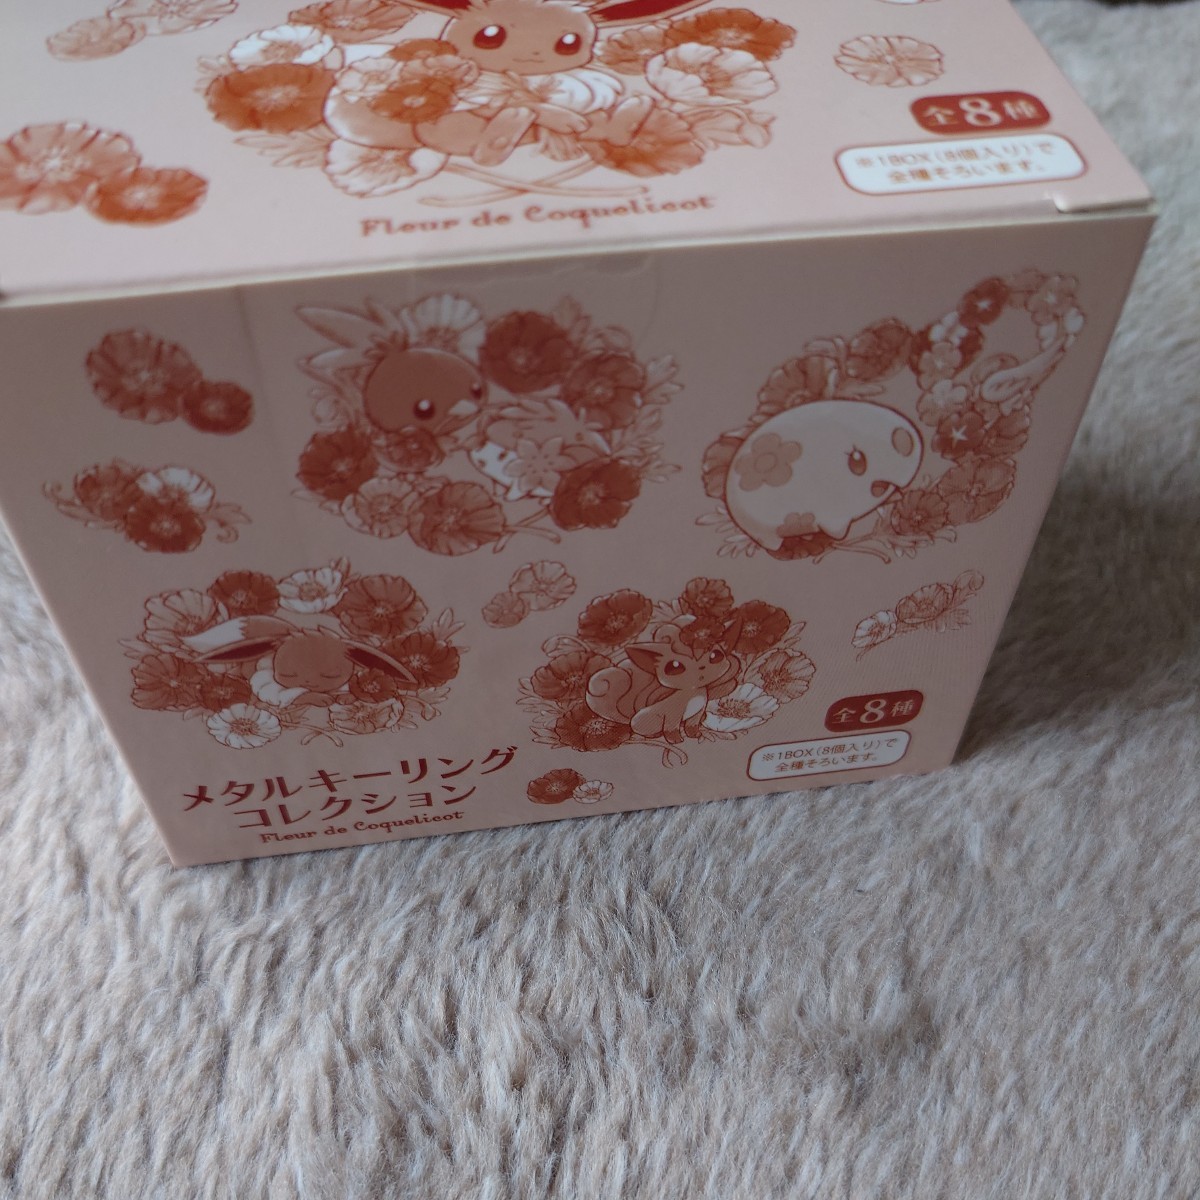 Fleur de Coquelicot メタルキーリングコレクション BOX - 通販 - sge 